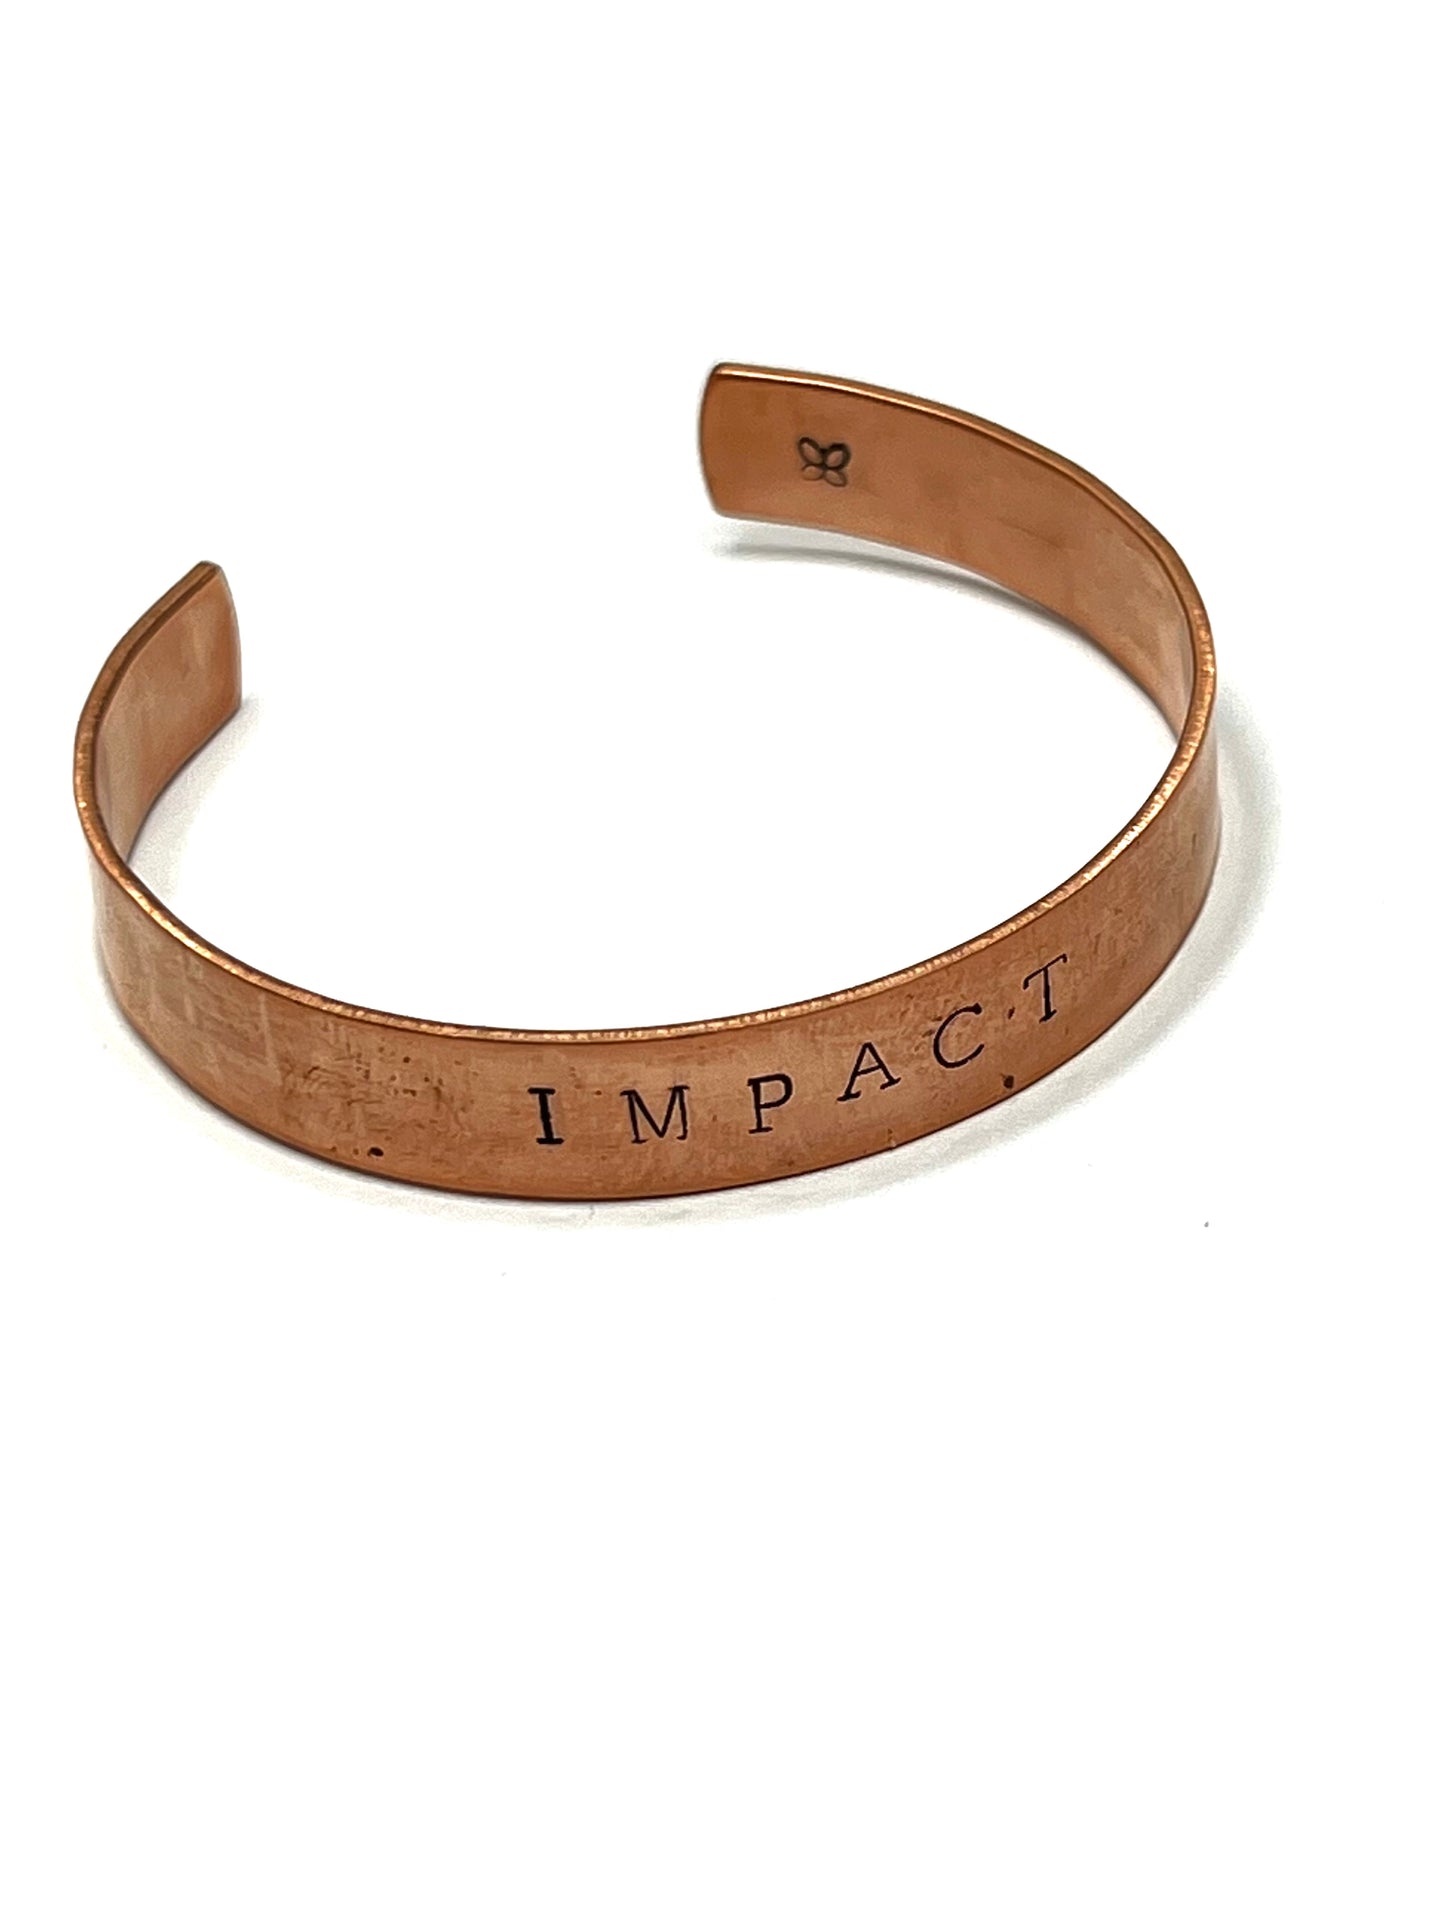 Customized Copper Cuff Bracelets